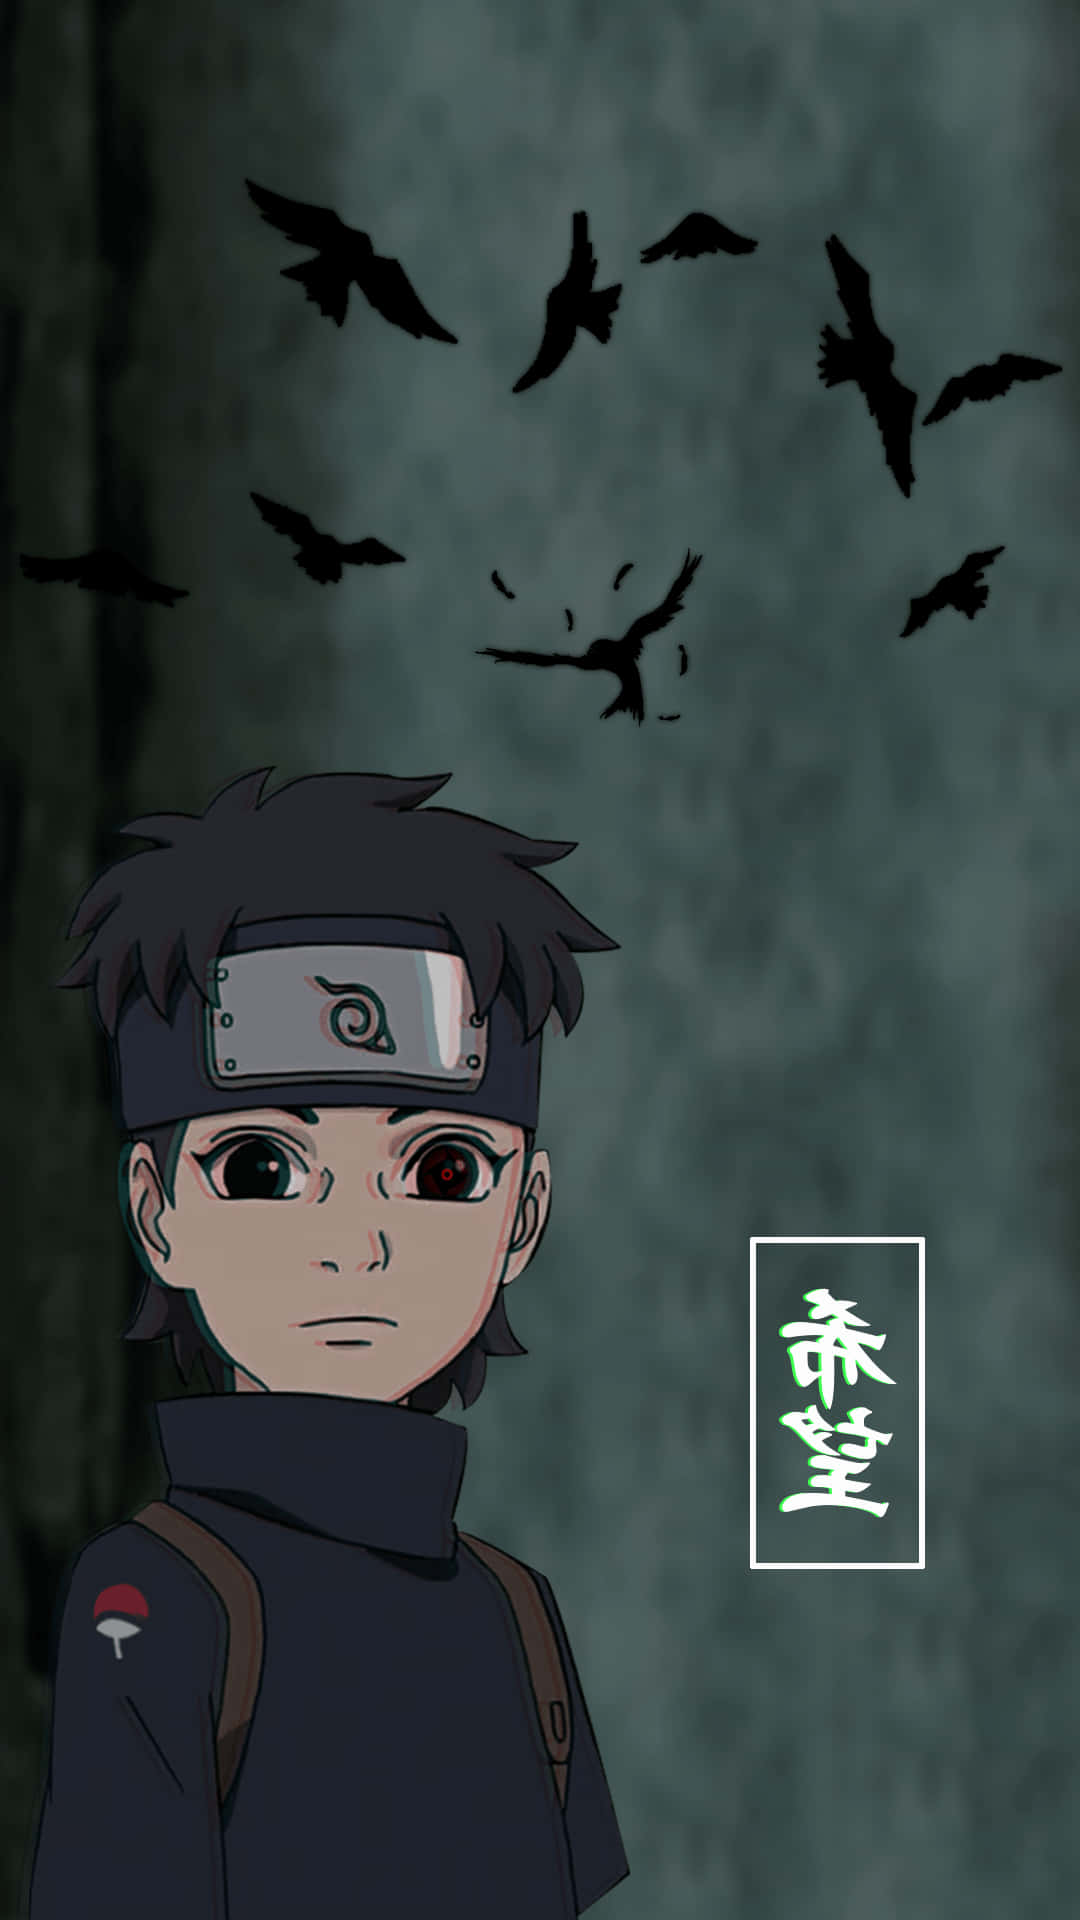 Gefühlevon Traurigkeit Und Hoffnung Verschmelzen In Naruto. Wallpaper